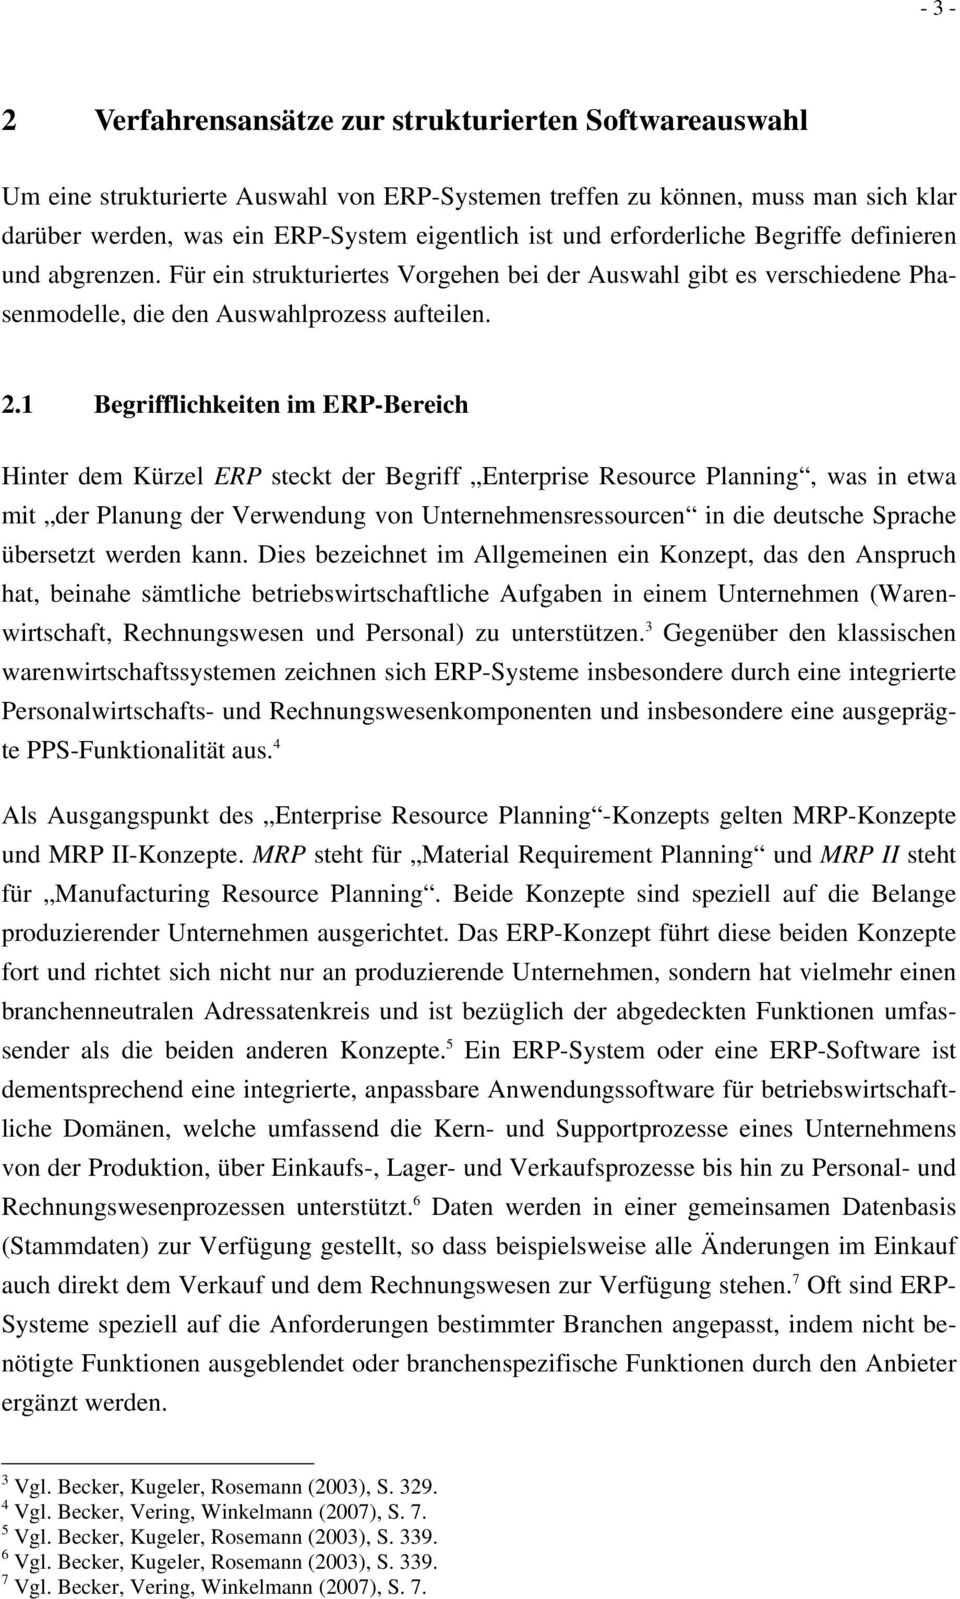 1 Begrifflichkeiten im ERP-Bereich Hinter dem Kürzel ERP steckt der Begriff Enterprise Resource Planning, was in etwa mit der Planung der Verwendung von Unternehmensressourcen in die deutsche Sprache